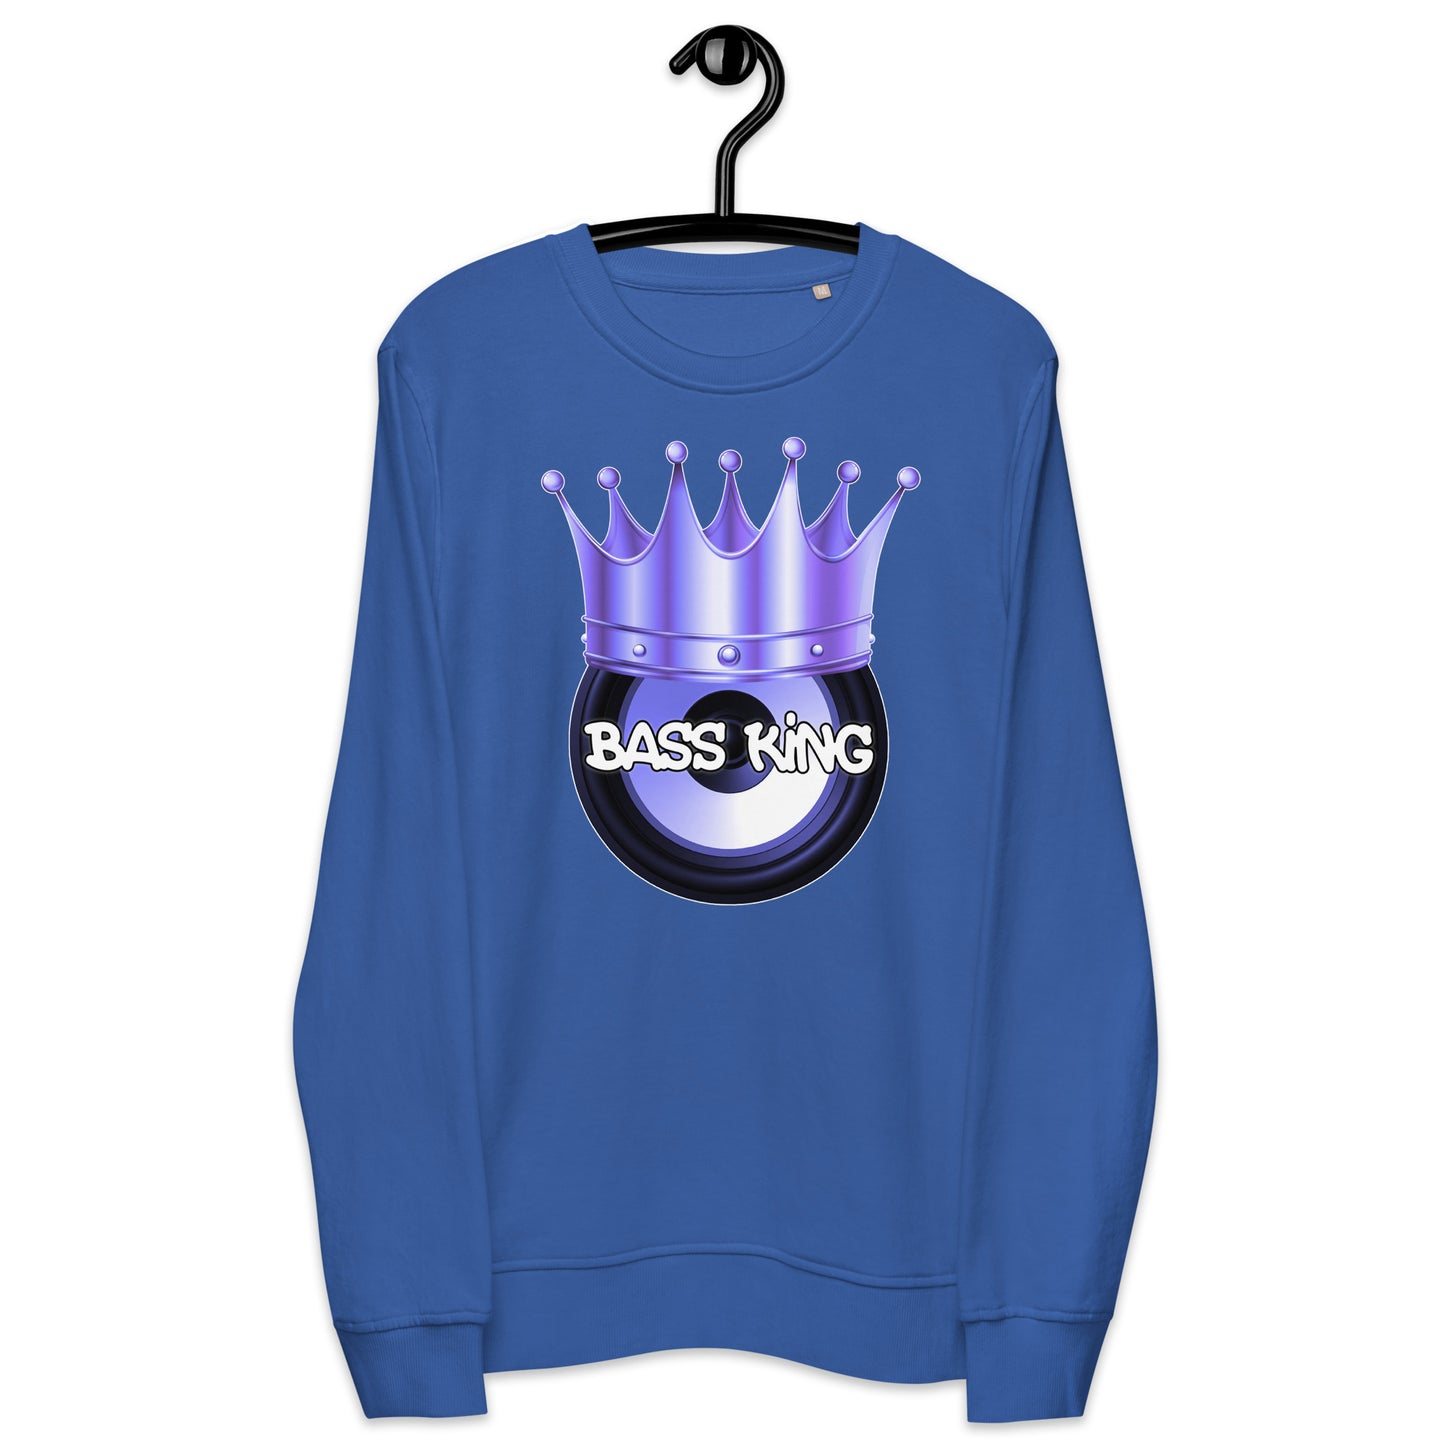 Bass King Sweatshirt